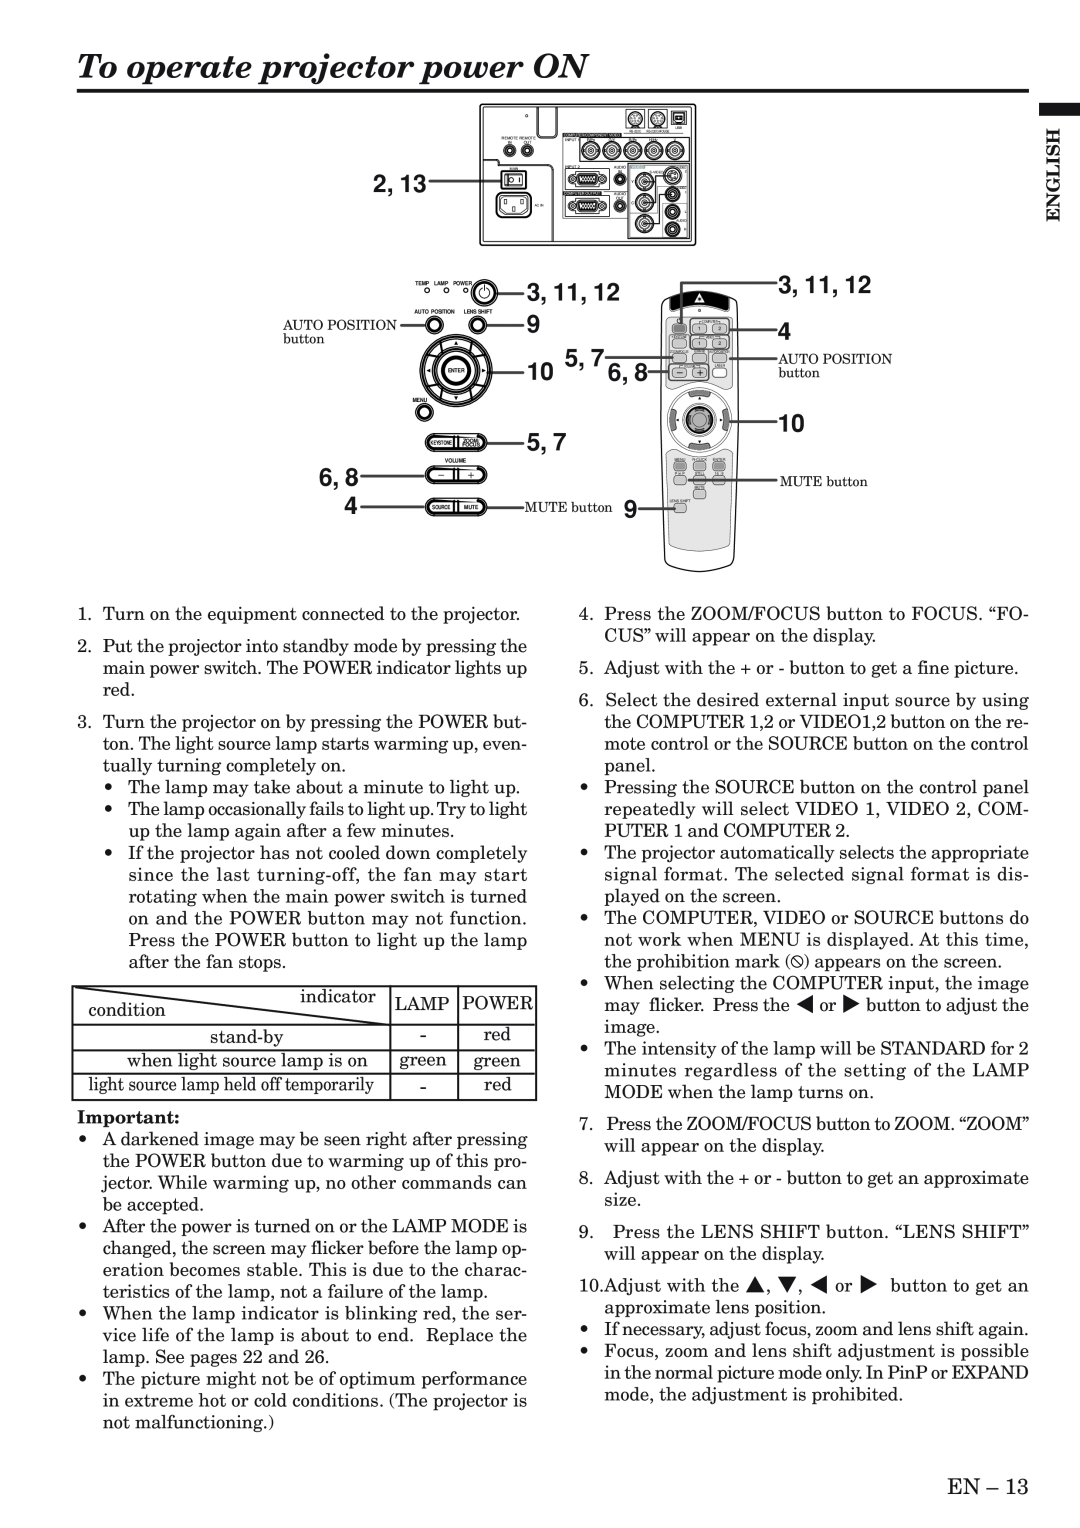 Mitsubishi Electronics XL5980LU, XL5980U user manual To operate projector power ON, 6, 8, 3, 11, 12 10 5, 7 6, English 